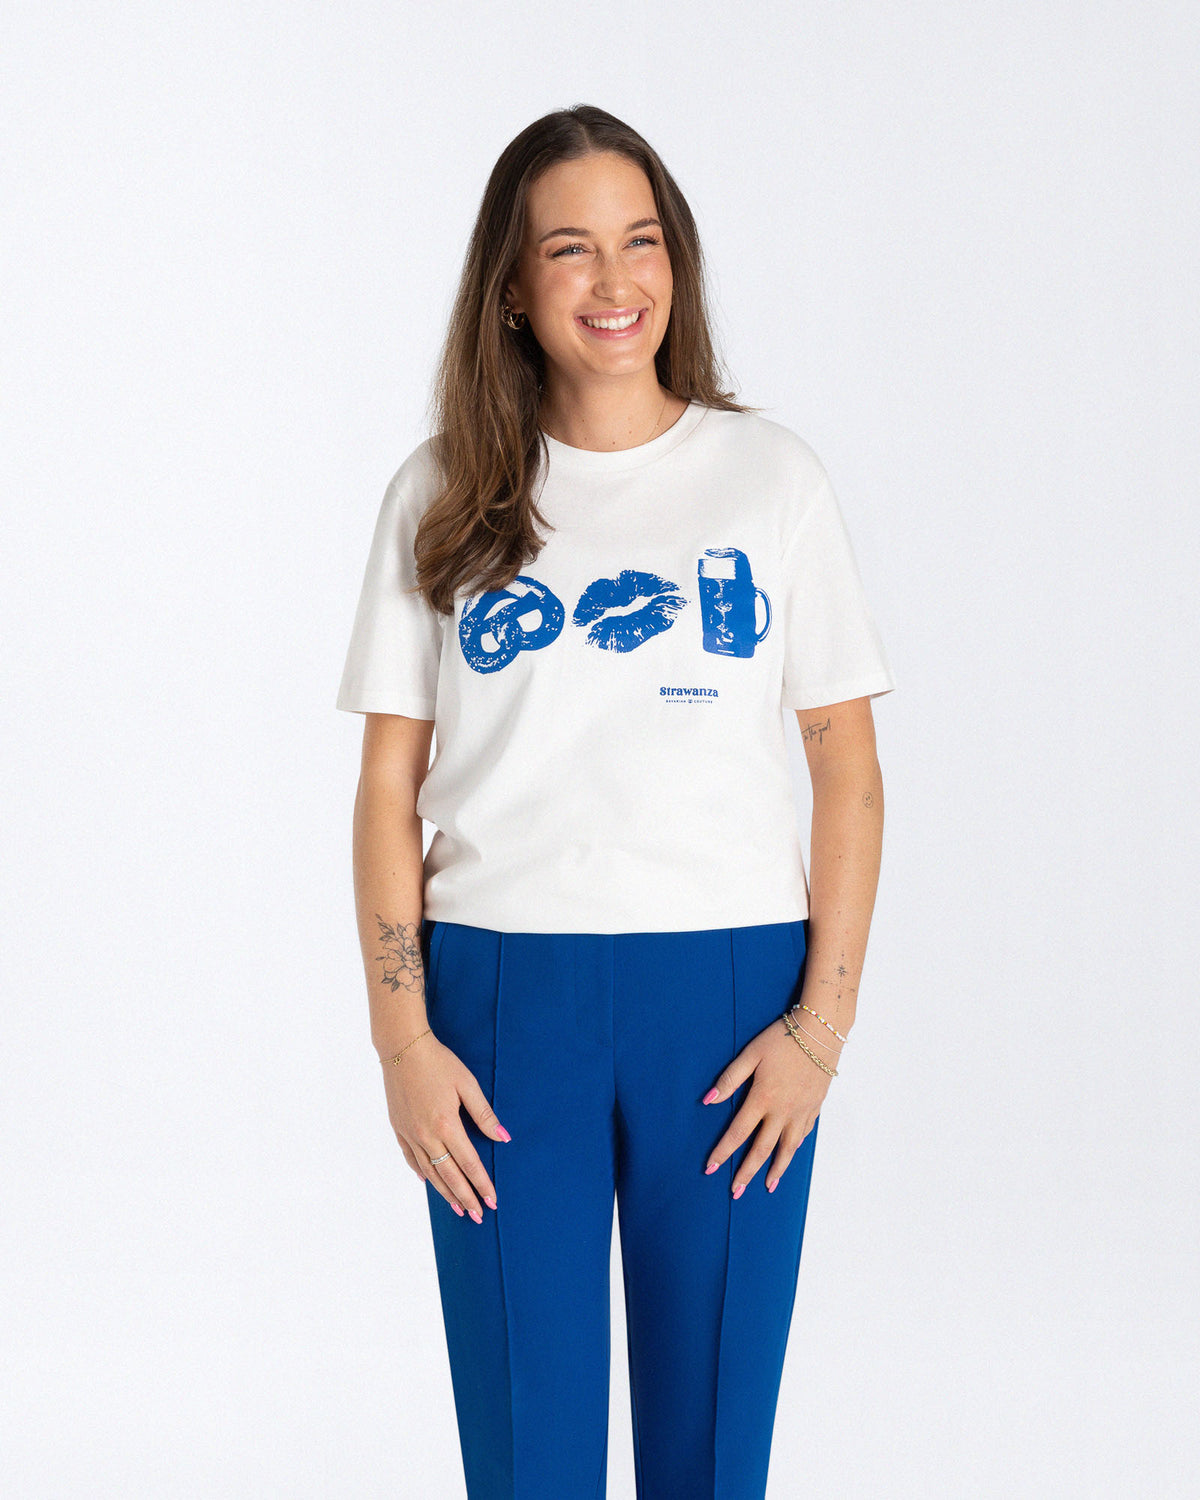 Ein weibliches Model trägt ein weißes T-Shirt mit einem großen, blauen Motiv vorne auf der Brust, zu erkennen sind eine Breze, ein Kussmund und Bier. 